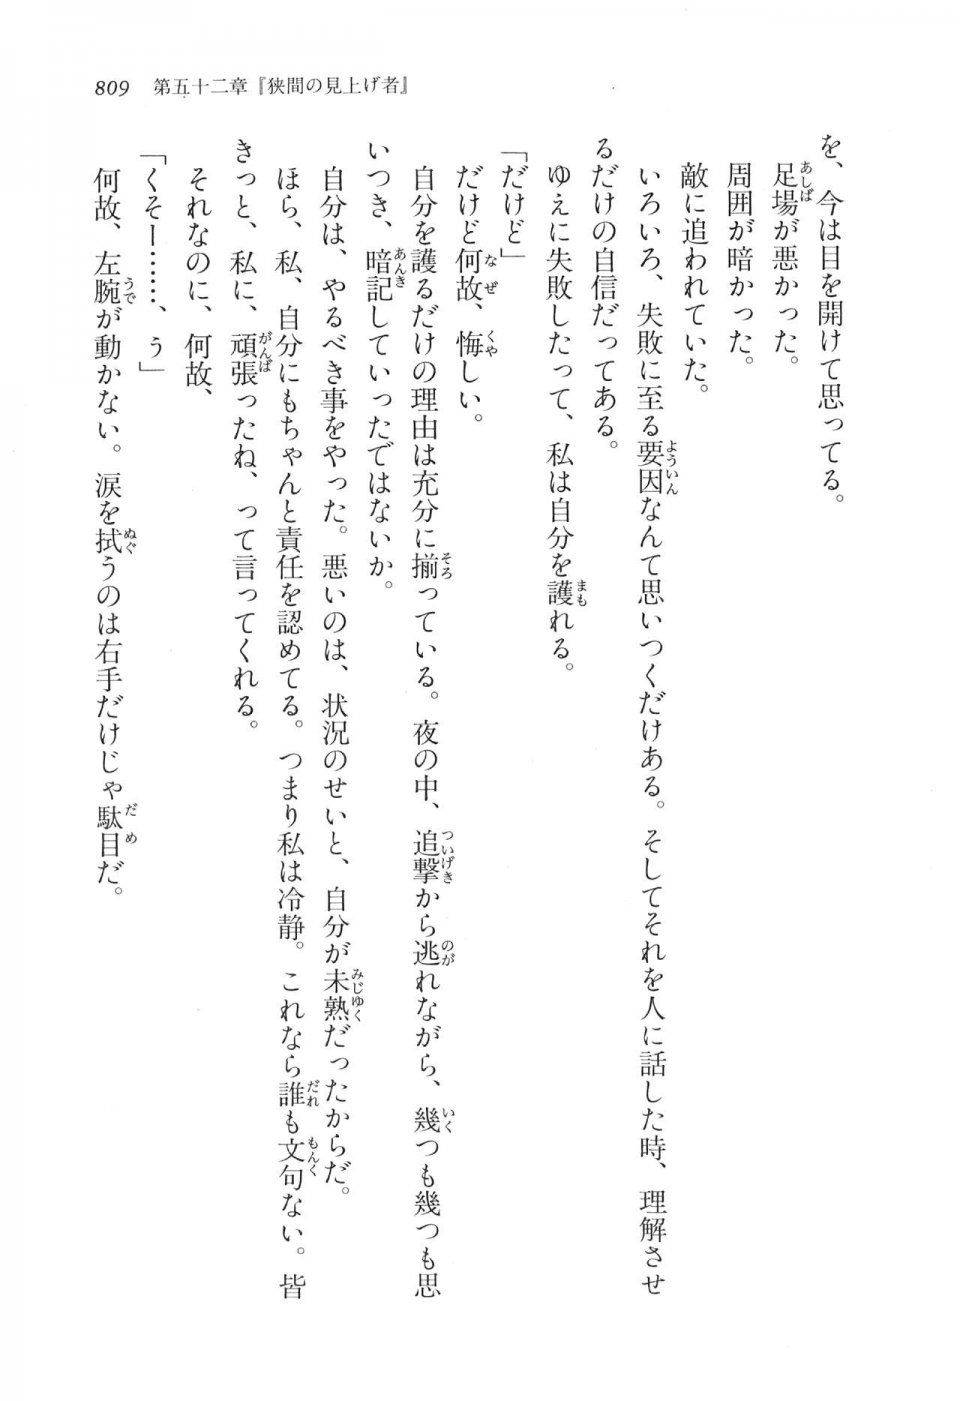 Kyoukai Senjou no Horizon LN Vol 17(7B) - Photo #811